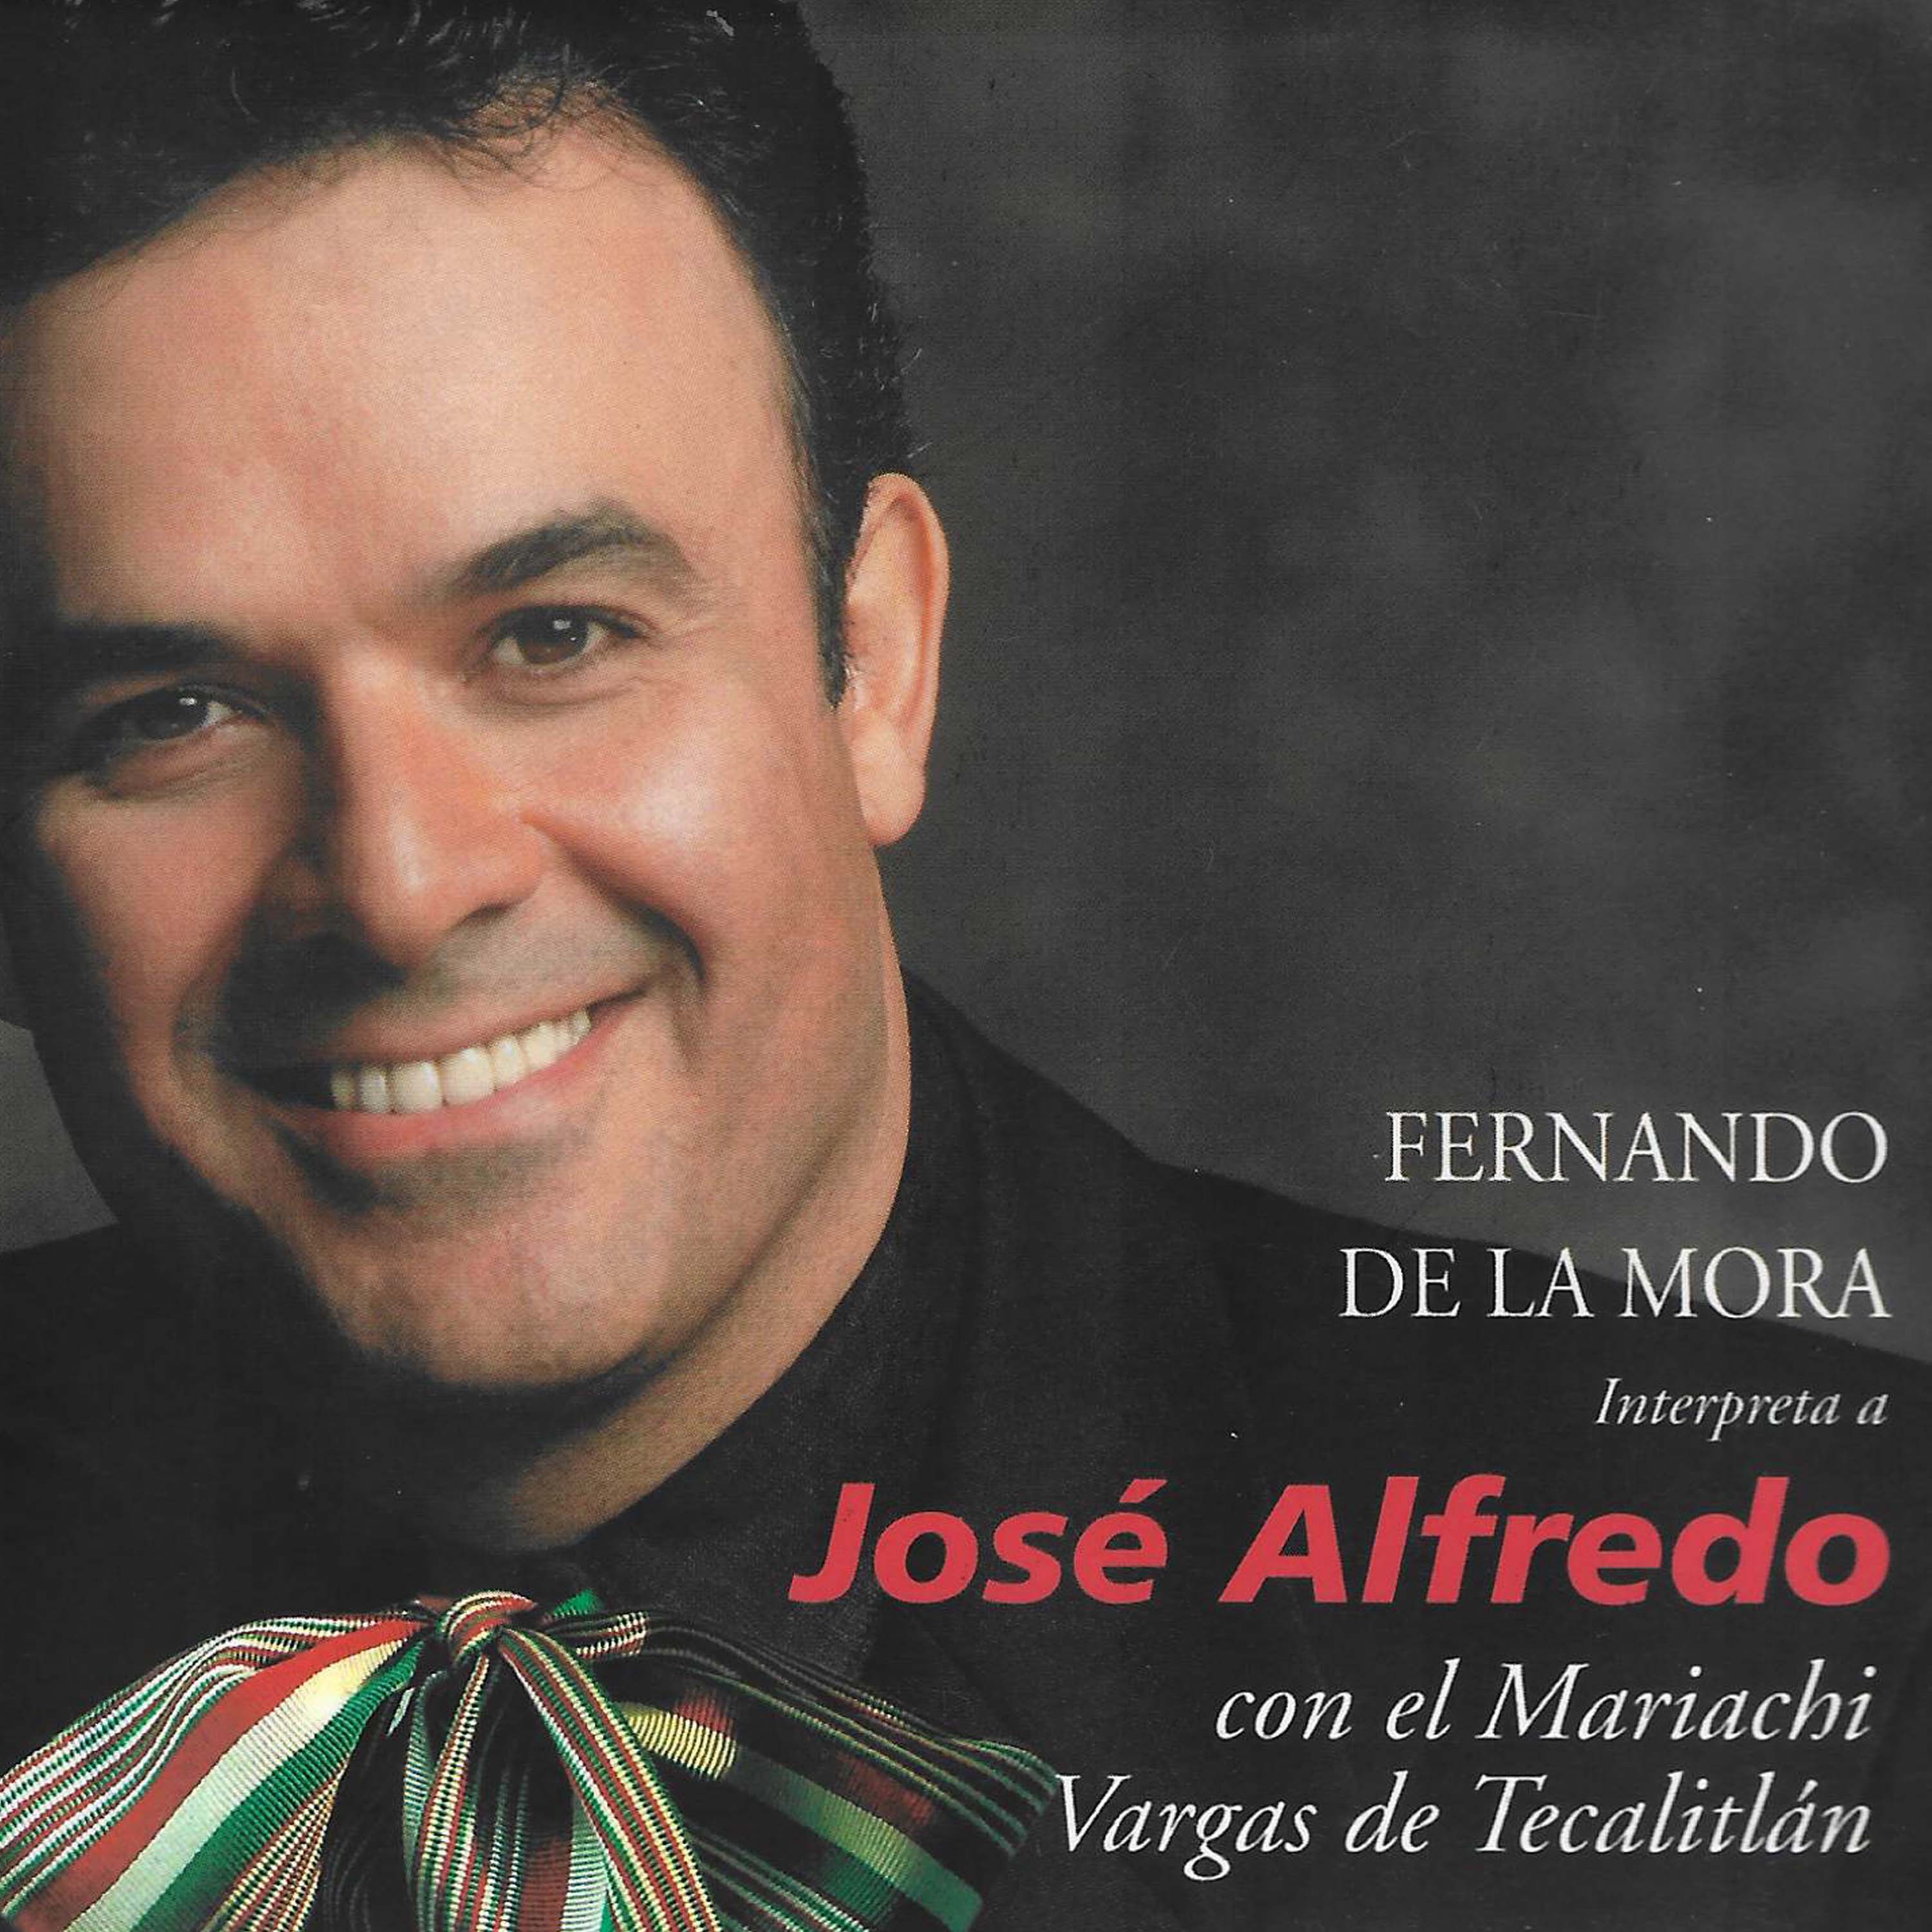 Fernando de la Mora interpreta a Jose Alfredo Jiménez